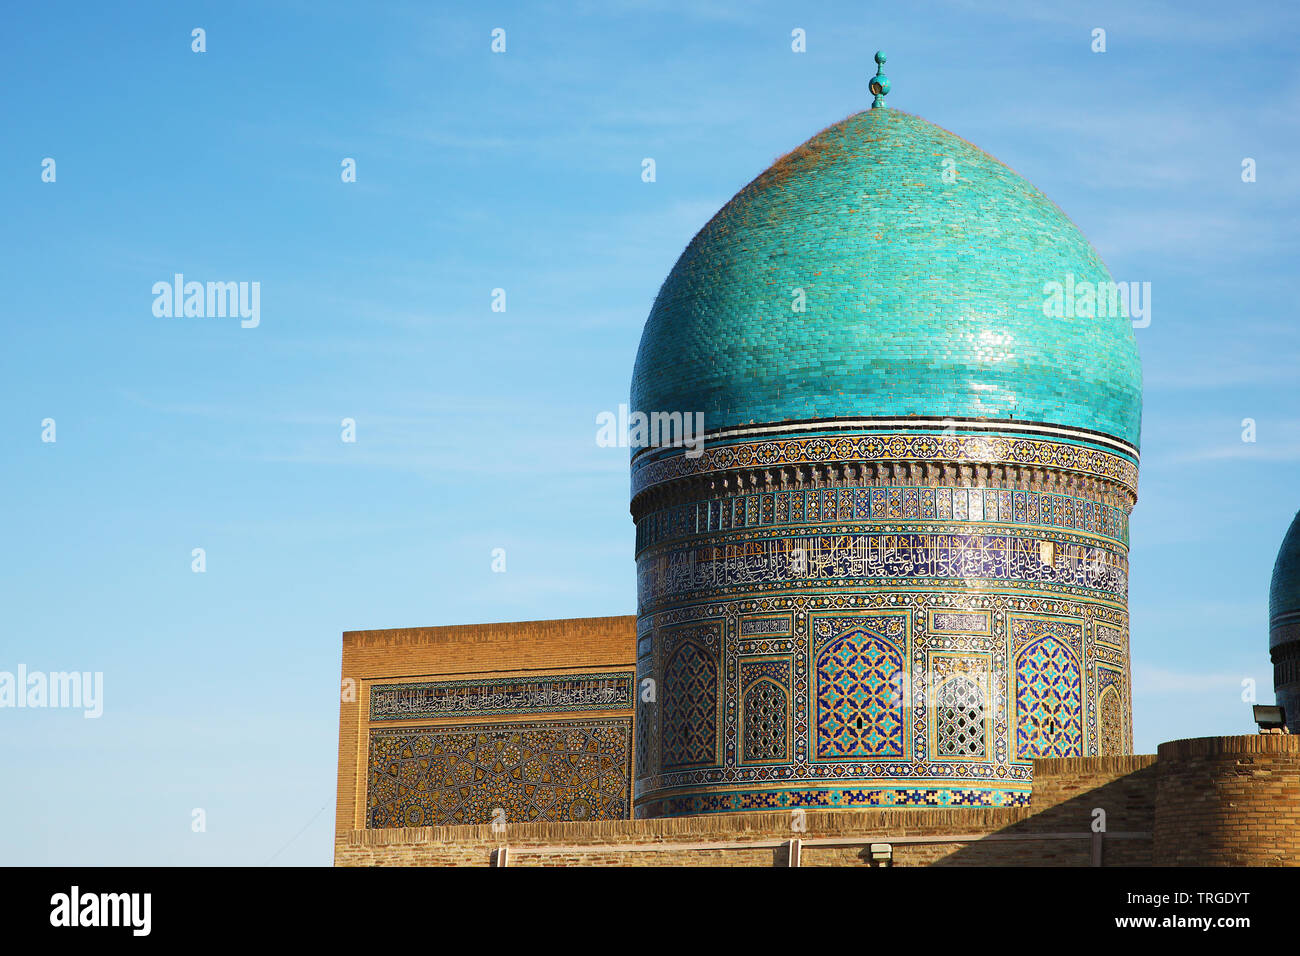 Dome from ancient Mir-i arab madrasa in Bukhara, Uzbekistan Stock Photo